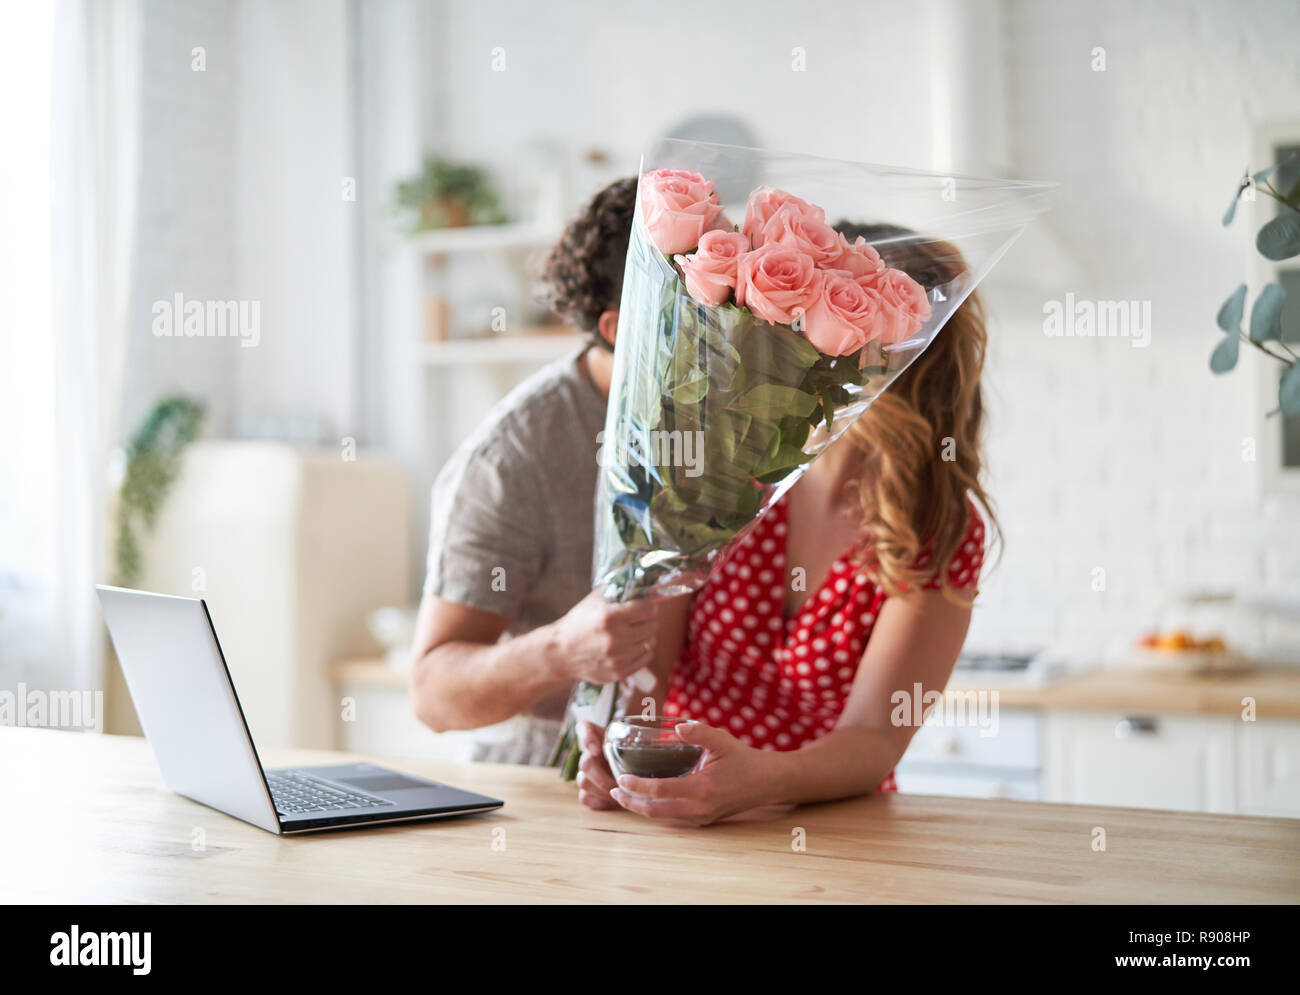 Sommer Urlaub, Liebe, Beziehung - Paar mit Blumenstrauß in der Küche. Laptop auf dem Tisch. Stockfoto